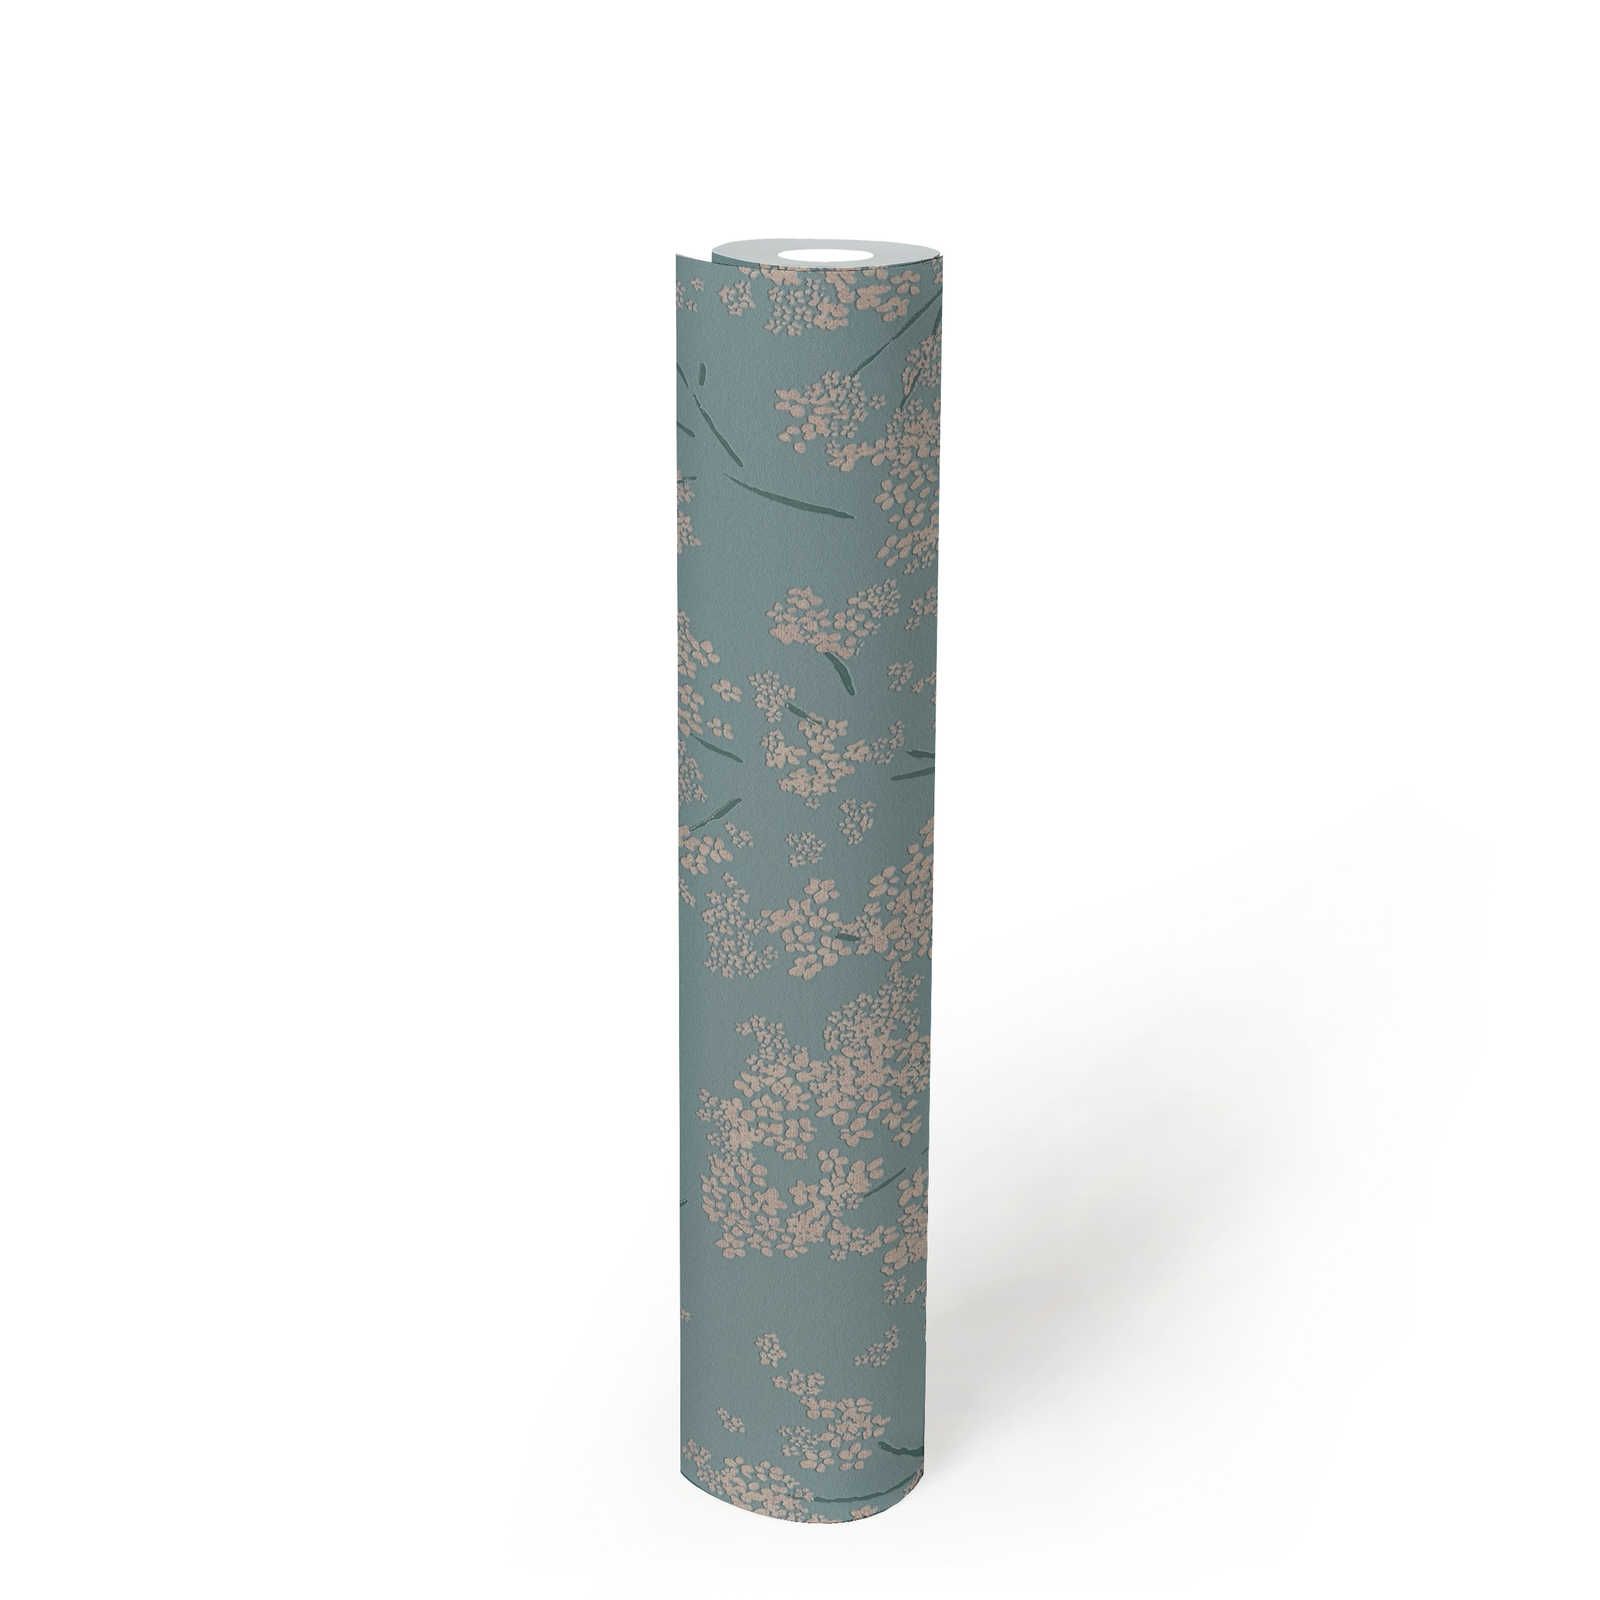             papier peint en papier intissé floral avec motifs abstraits - bleu, beige, turquoise
        